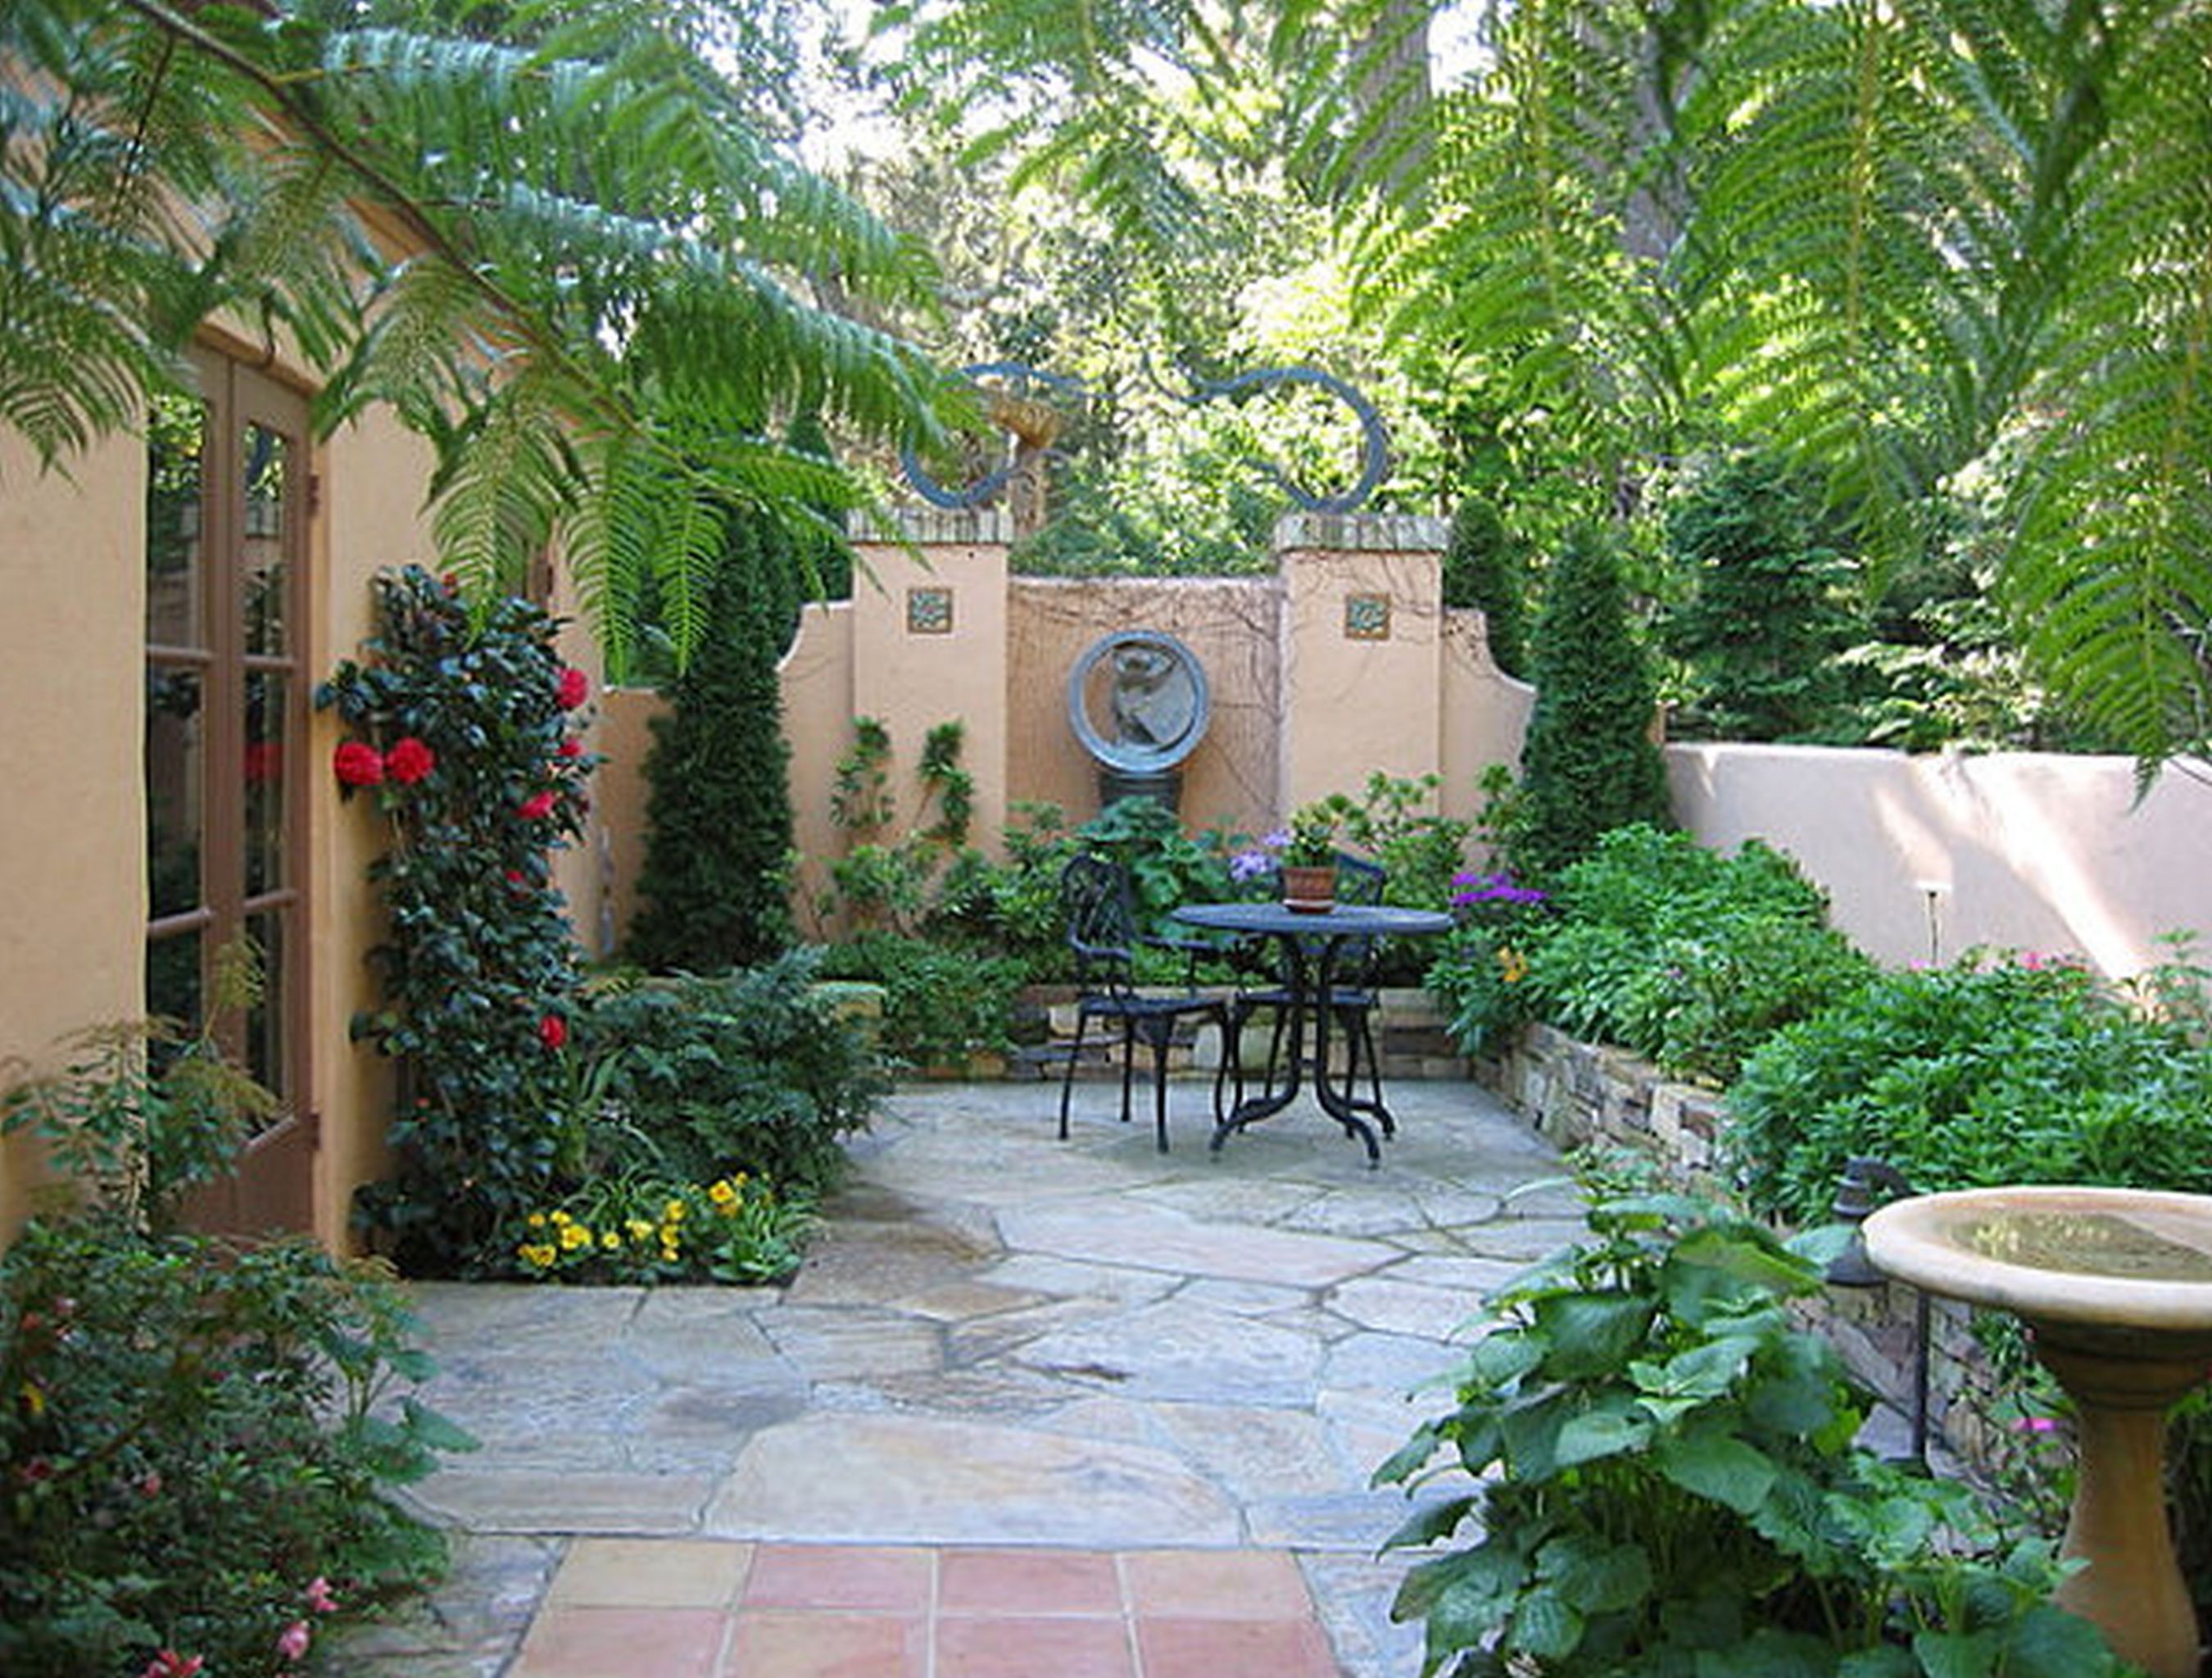 Small Backyard Patio Courtyard Garden Design Lovely Outdoor Decorating